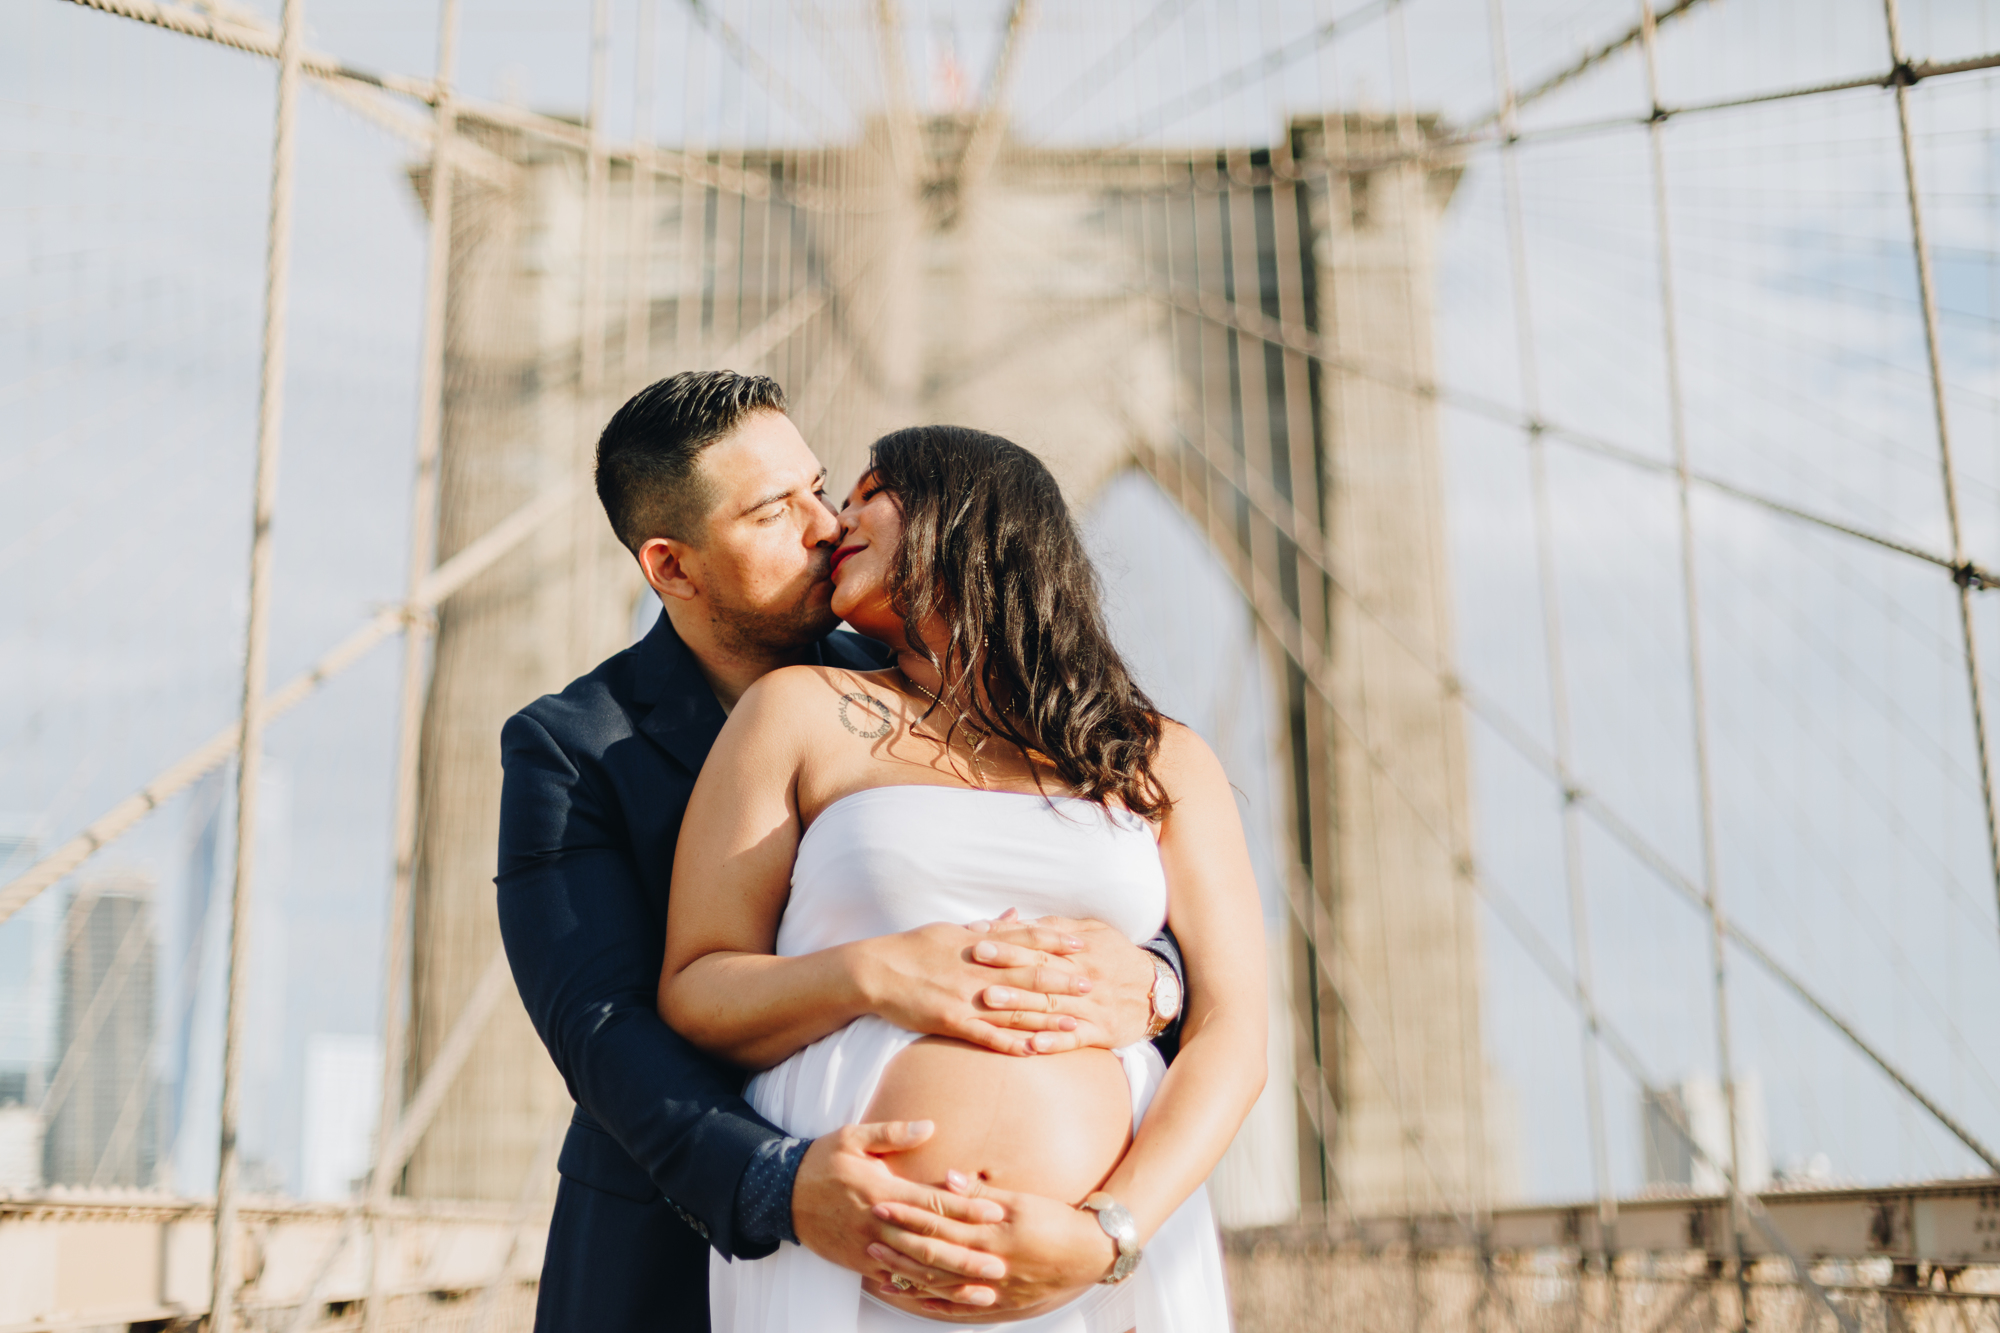 Beautiful Brooklyn Bridge Maternity Photos